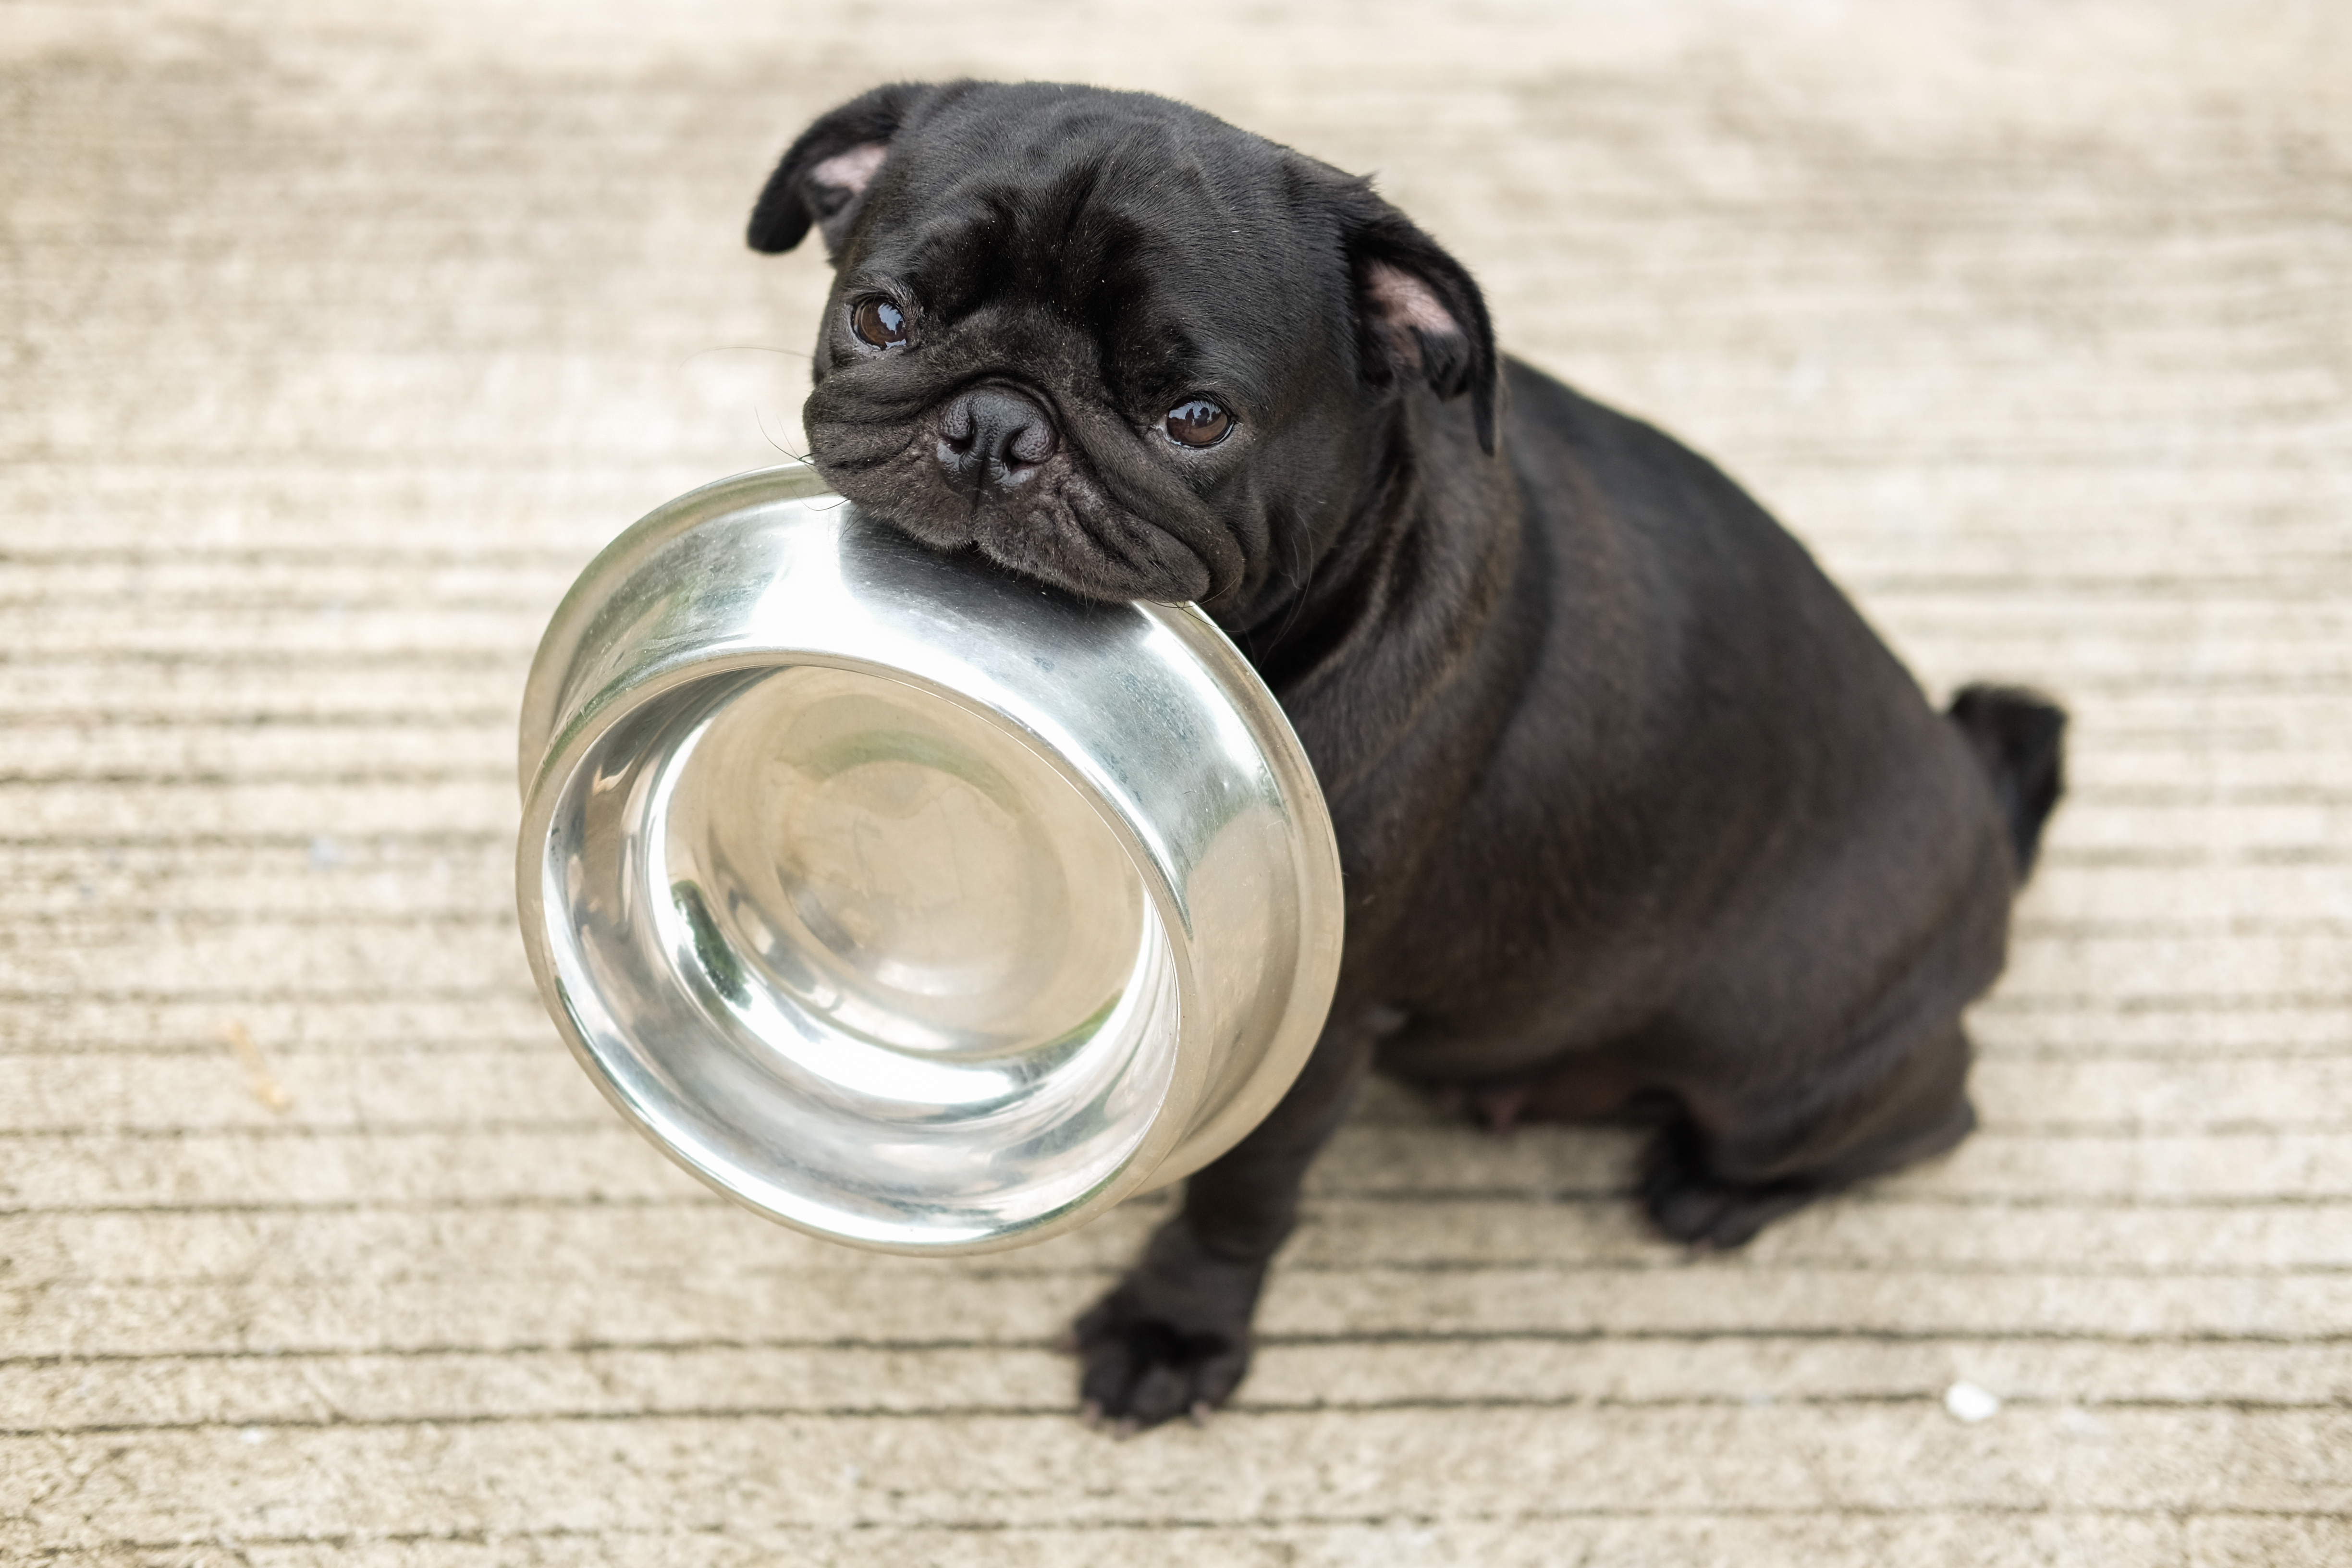 Биотехнологический стартап представил высокопротеиновый собачий корм без мяса